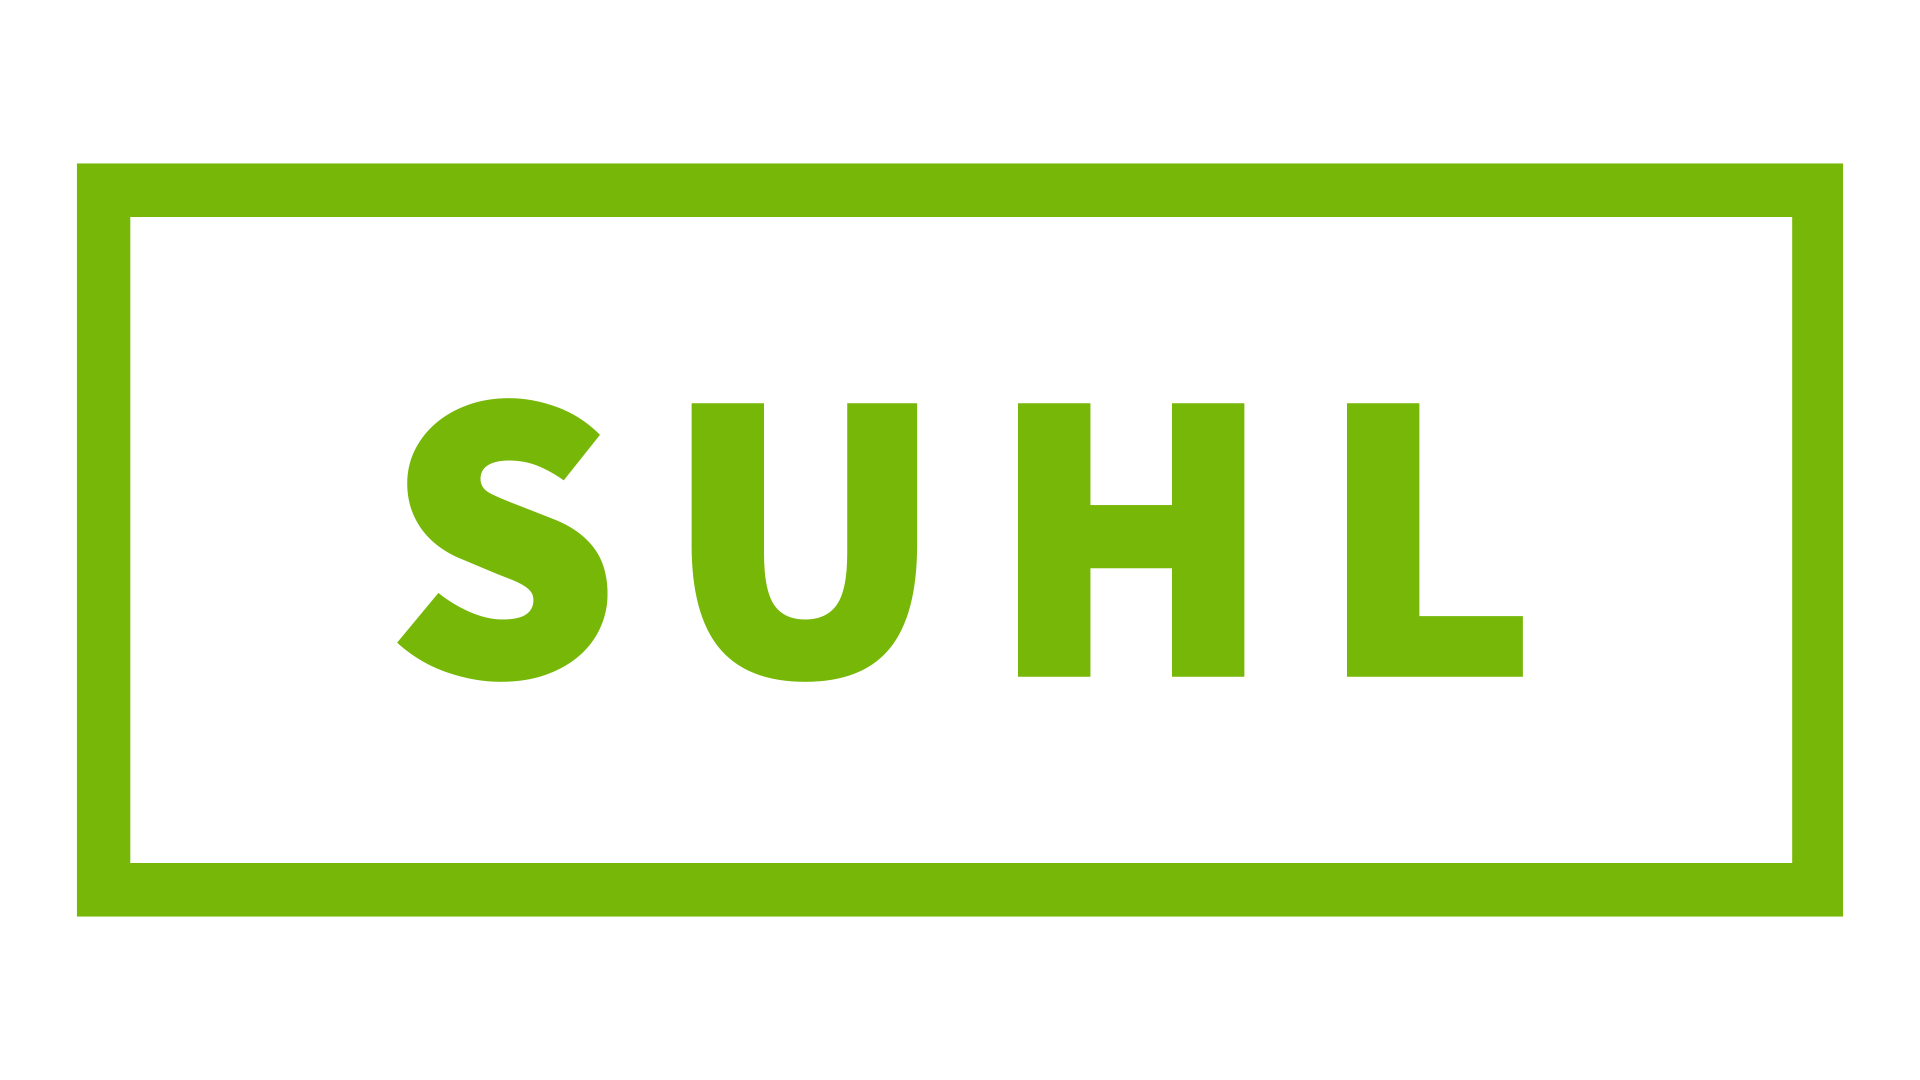 Suhl Tisch- und Wohnkultur GmbH